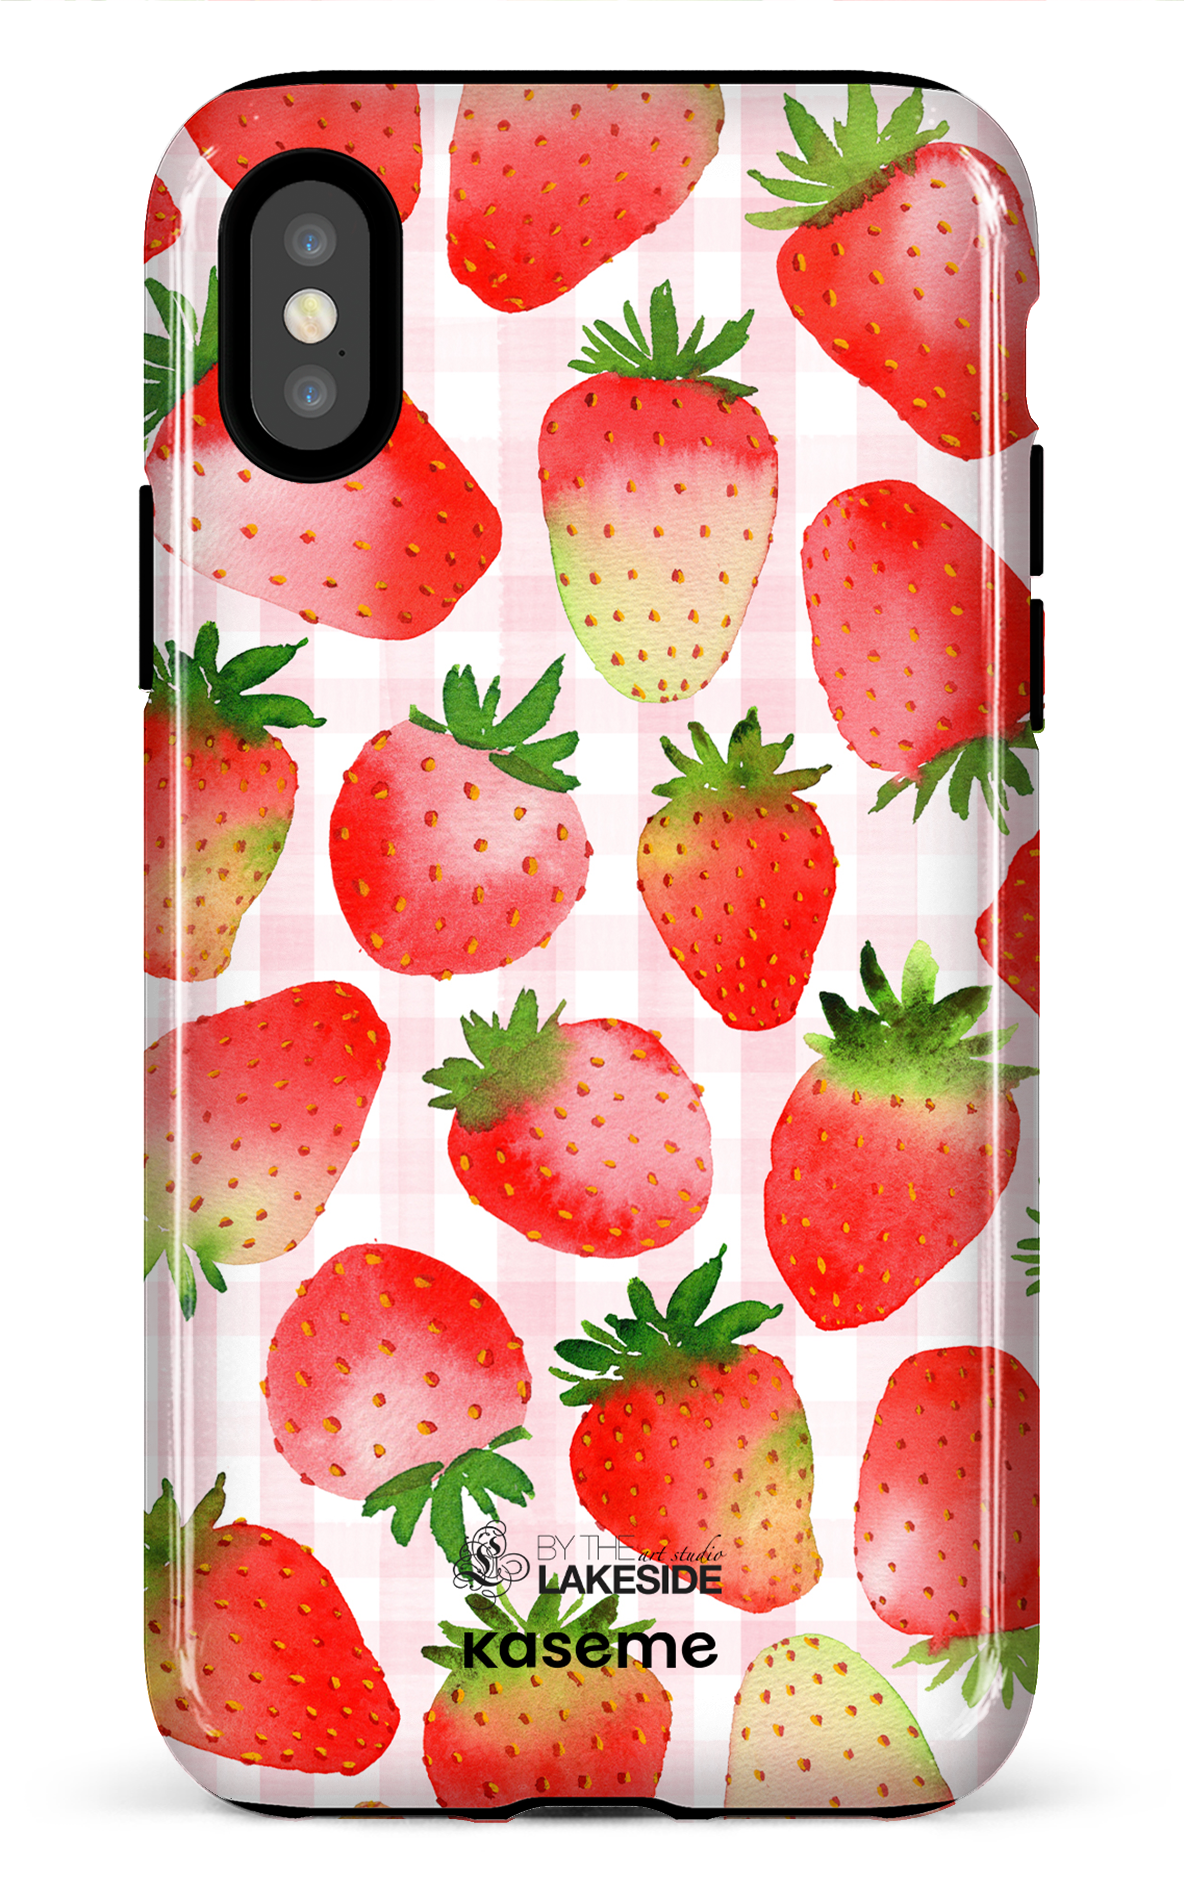 Strawberry Fields by Pooja Umrani - iPhone X/Xs